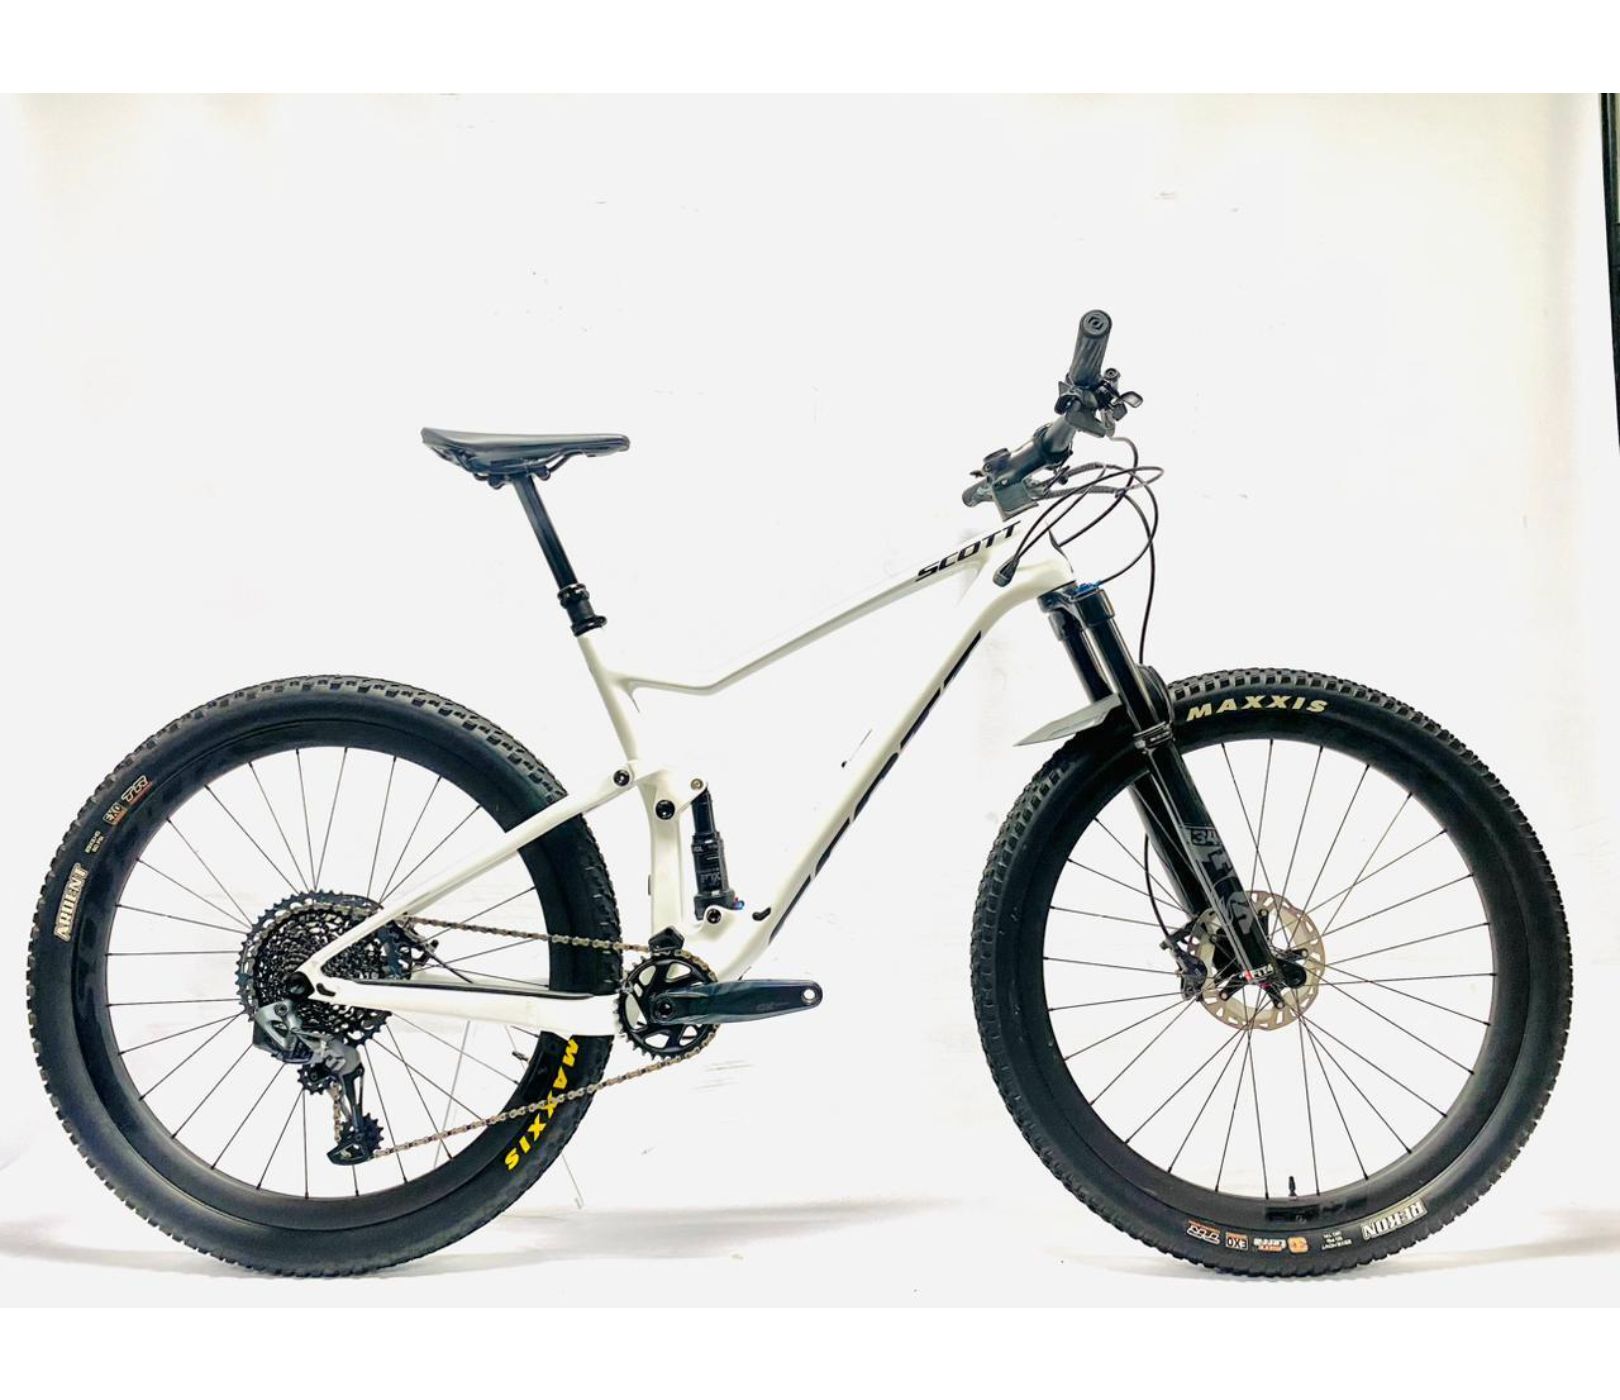 Pre-Owned Scott Spark 900 Carbon Dual Suspension Mountain Bike - M/L 